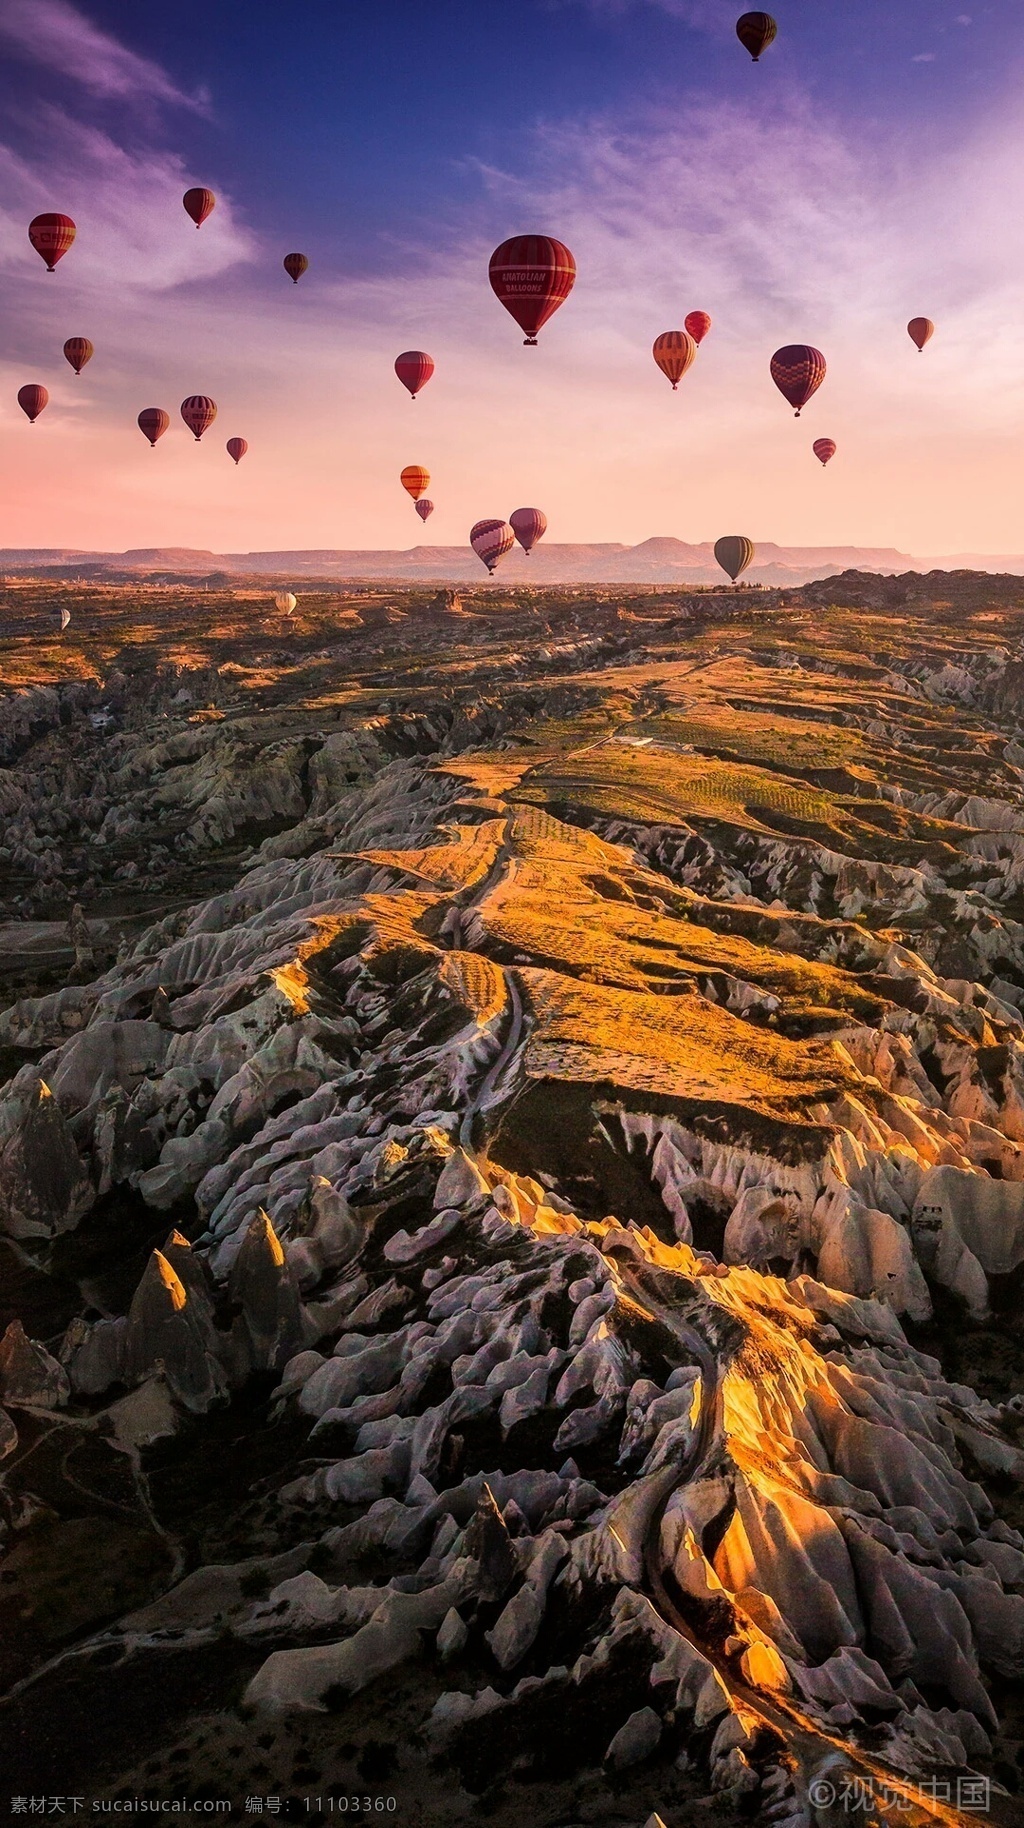 热气球旅行 热气球 旅行 天空 鸟瞰 霞光 自然景观 自然风景